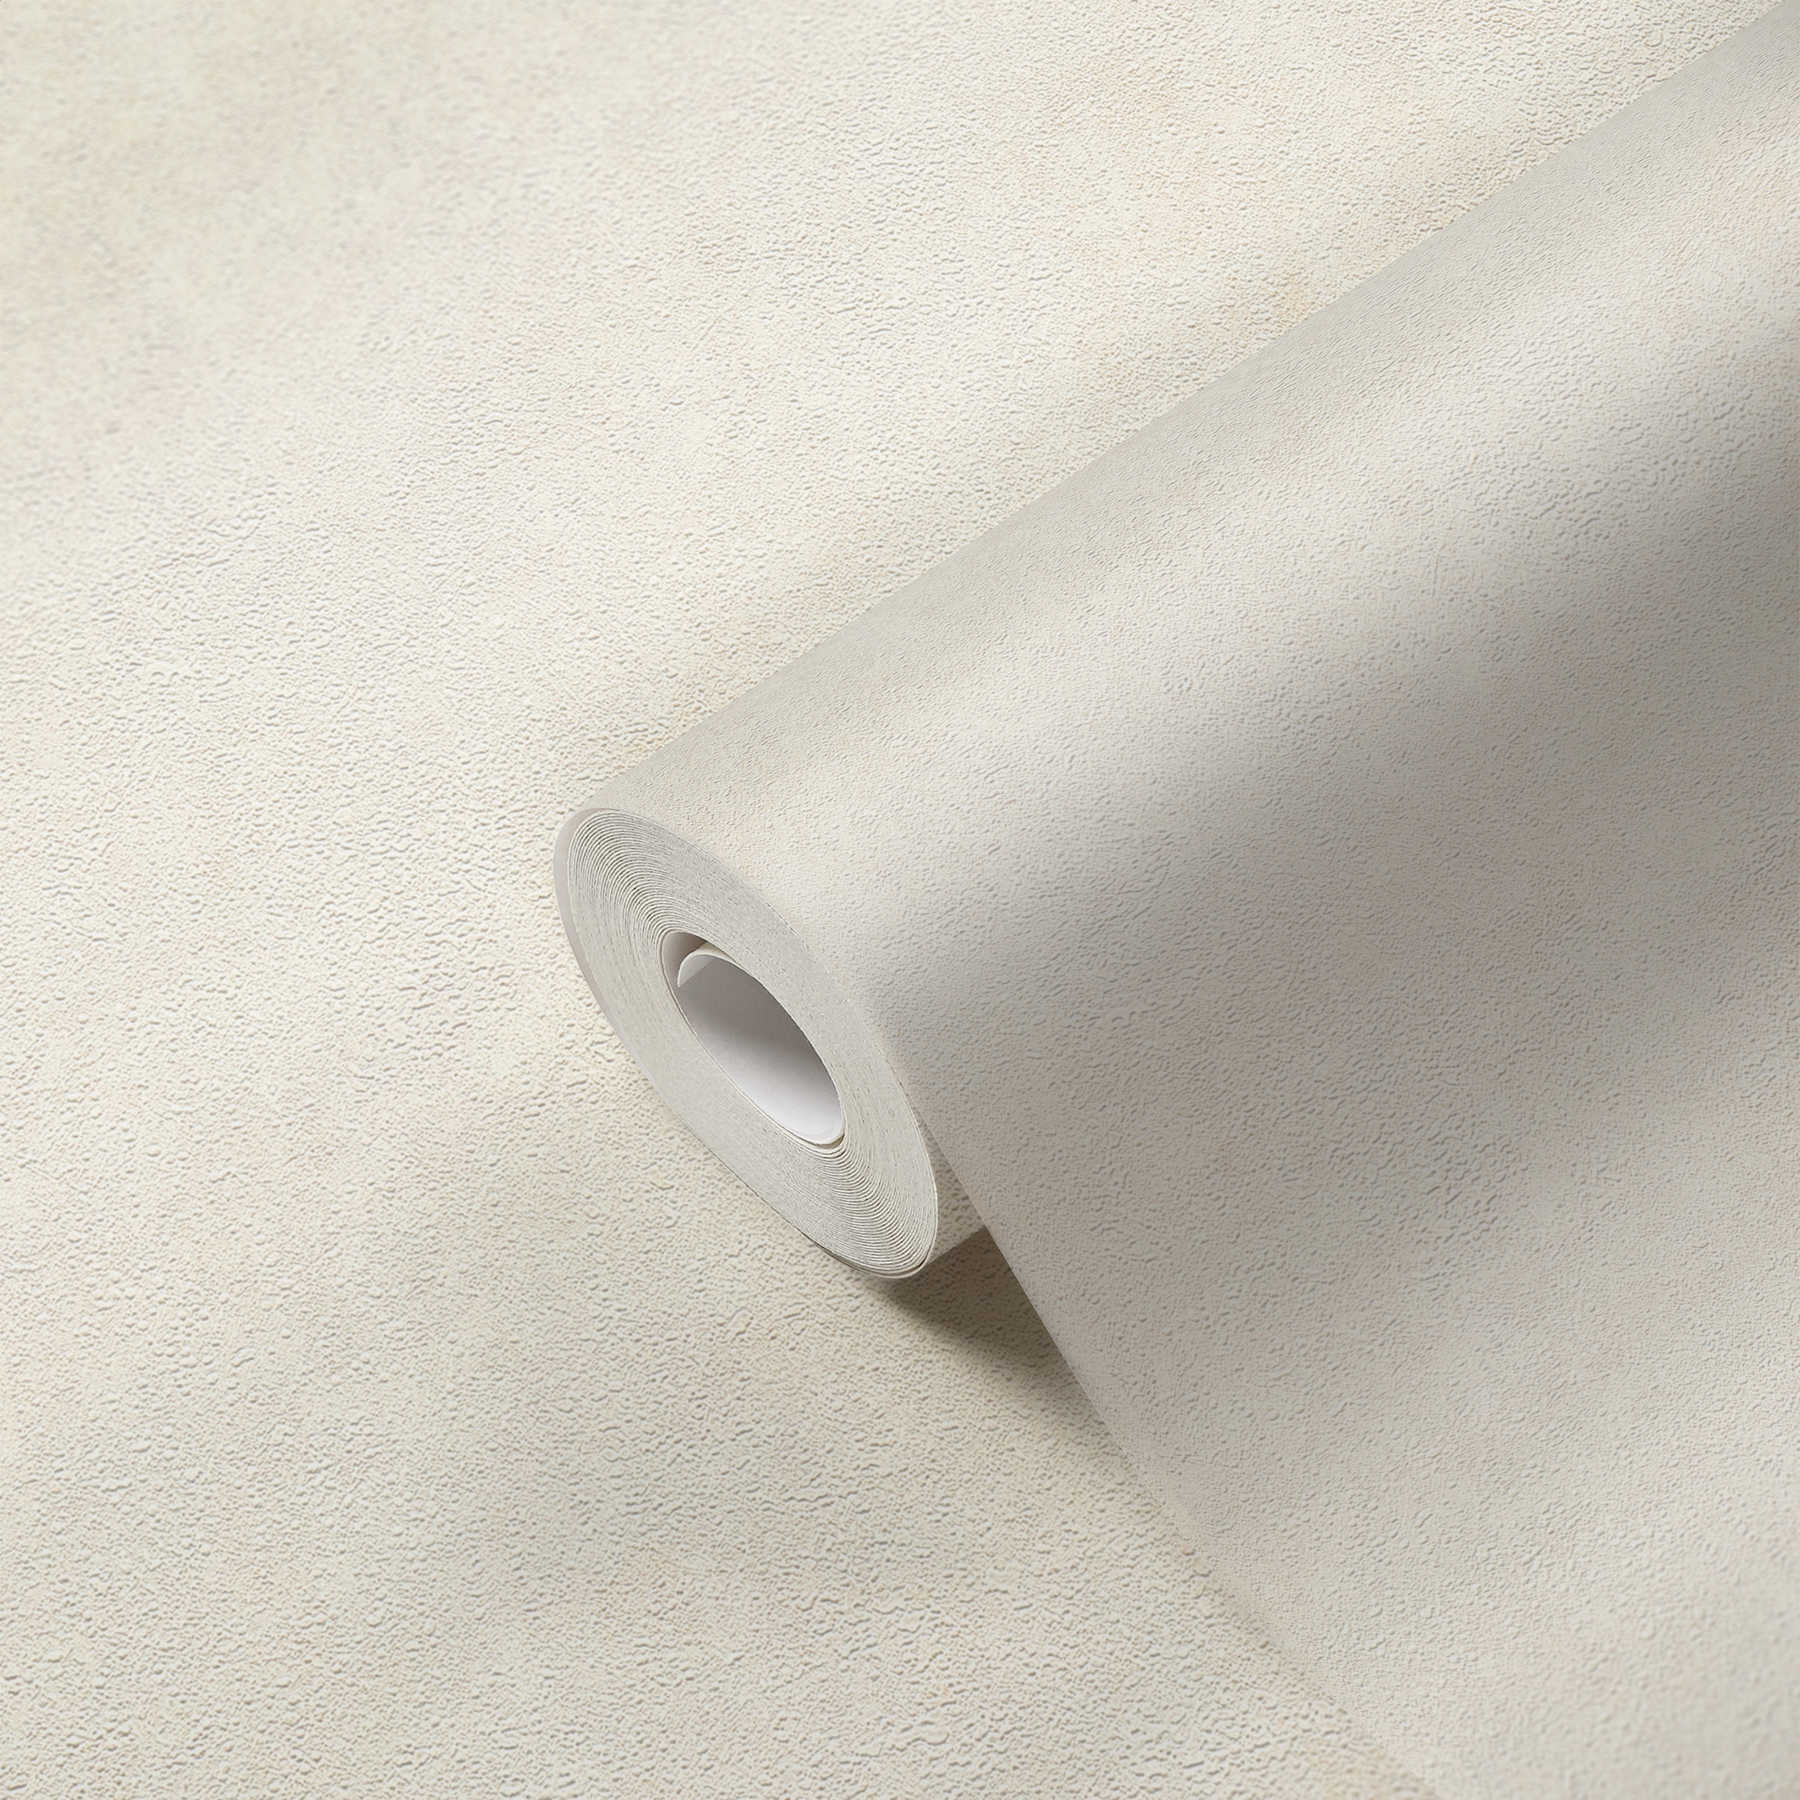             Papier peint intissé aux légers accents chatoyants - crème, blanc
        